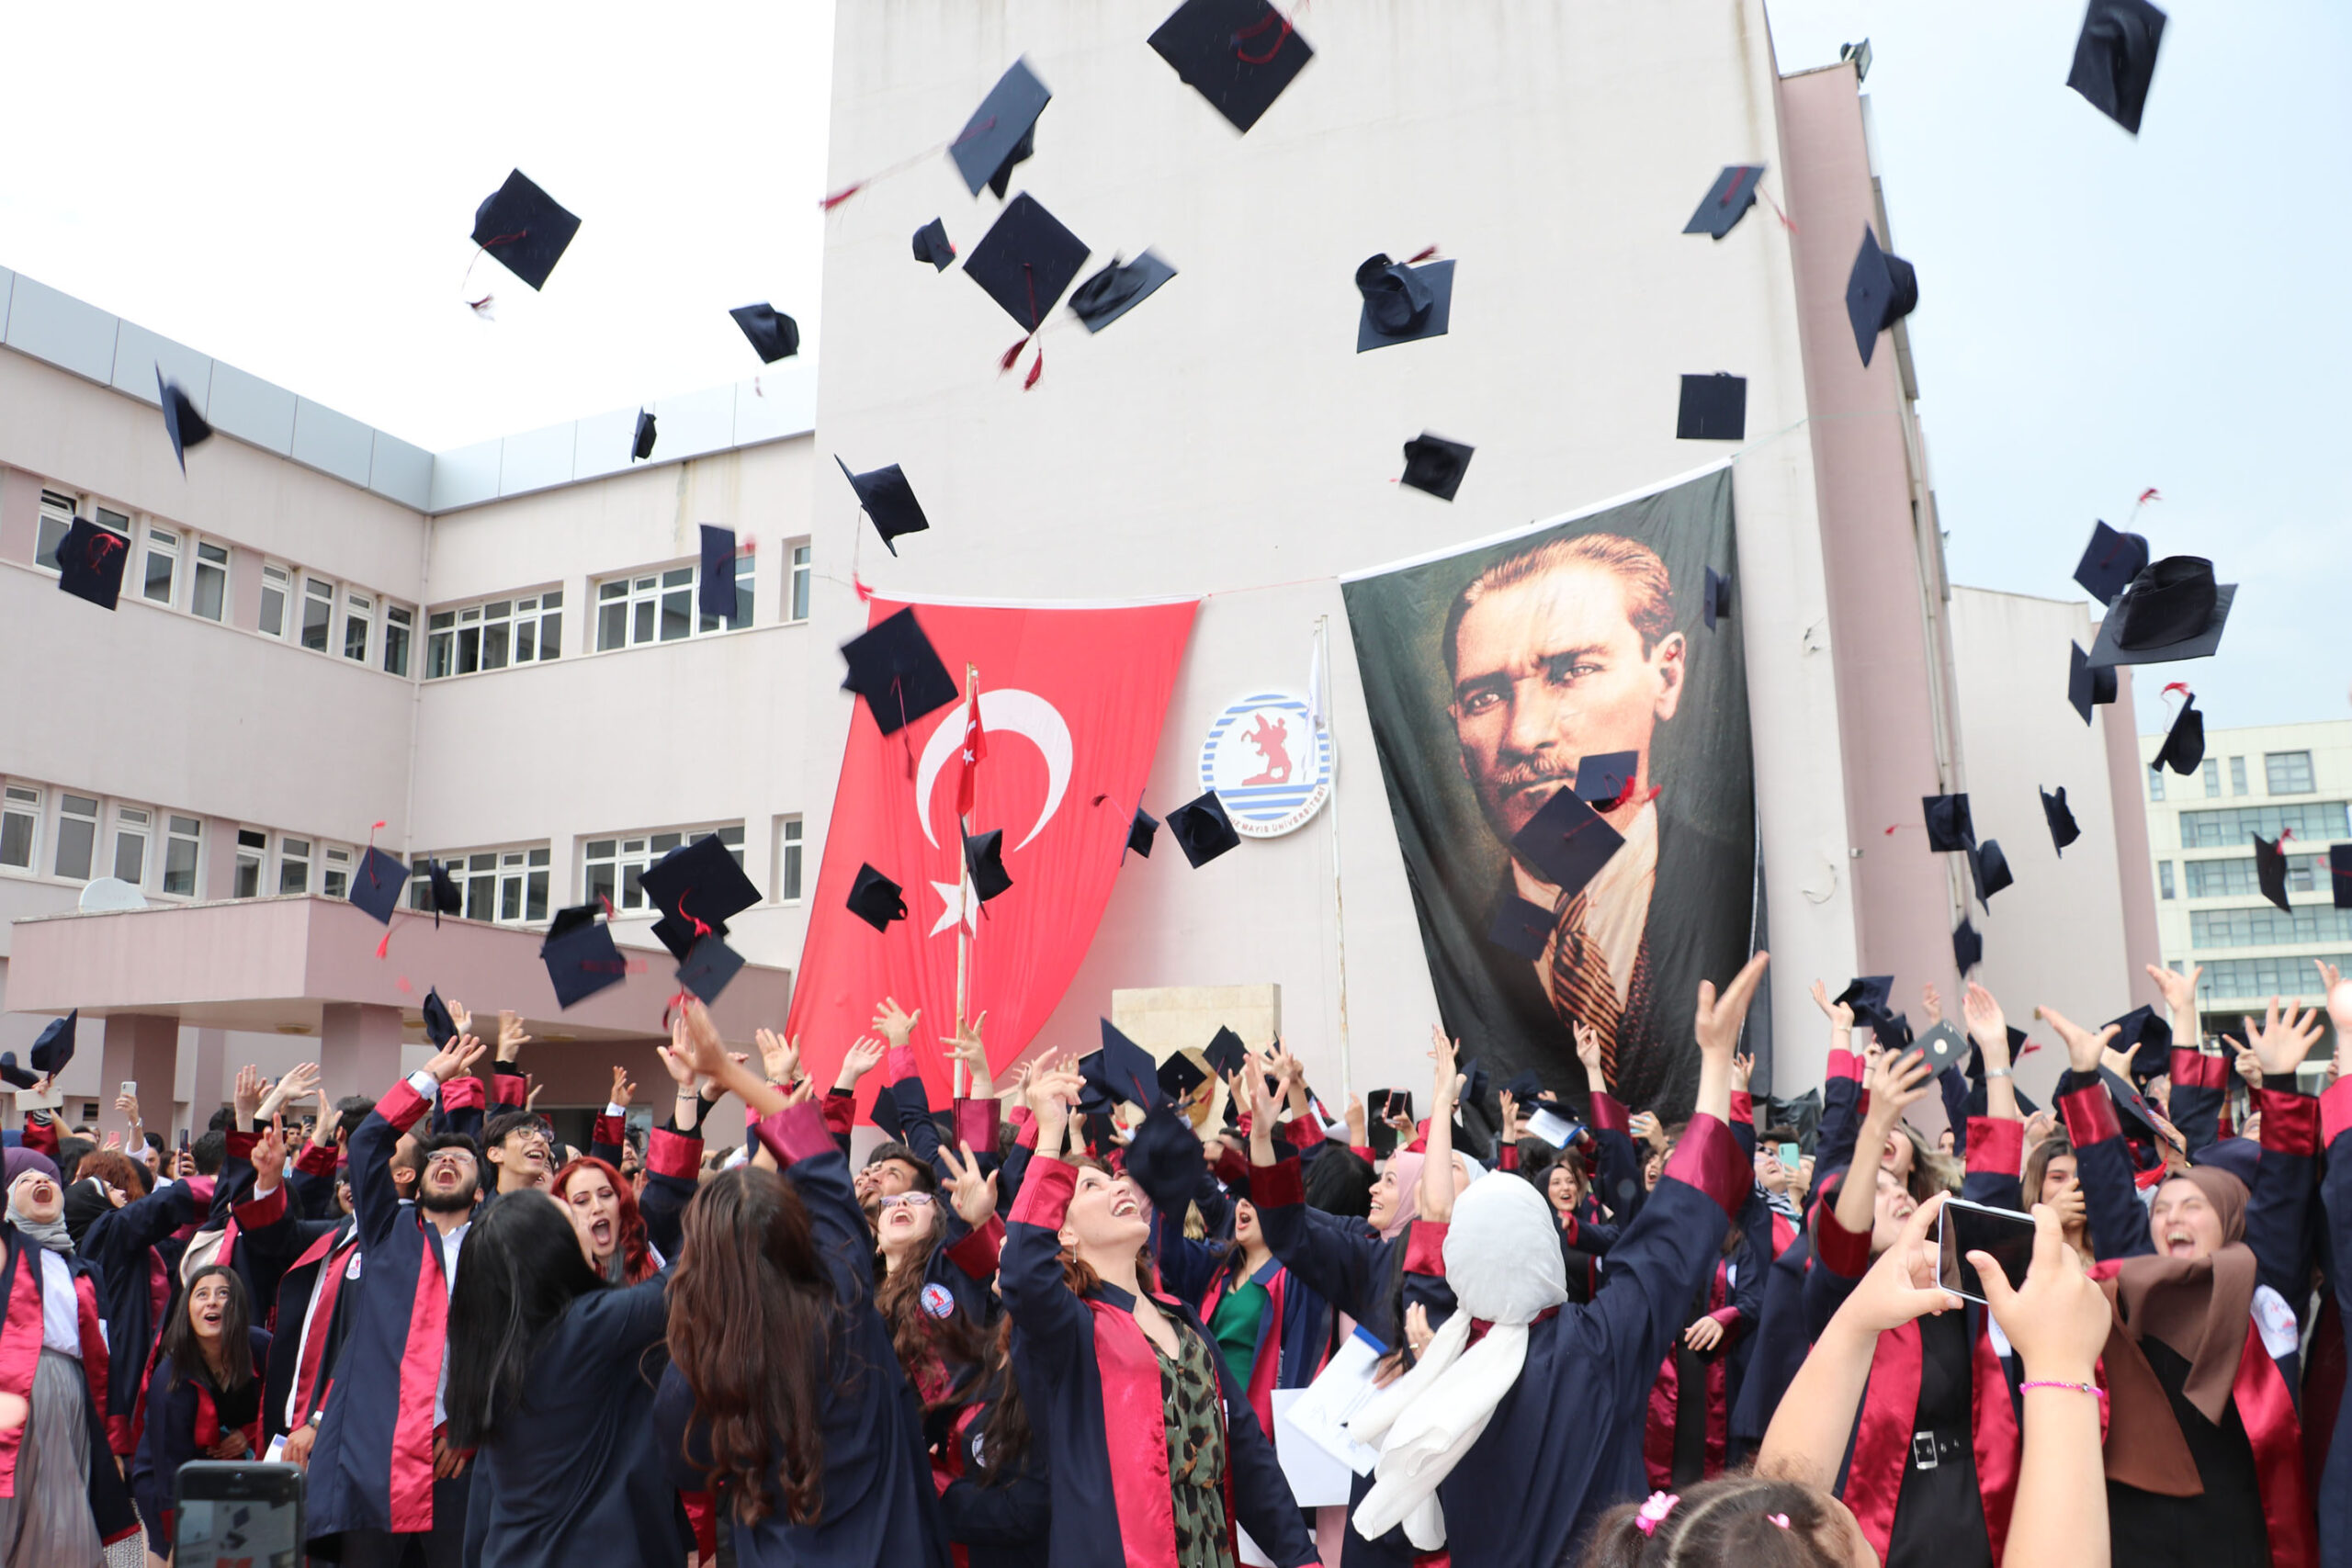 OMÜ Havza Meslek Yüksekokulunda mezuniyet töreni düzenlendi